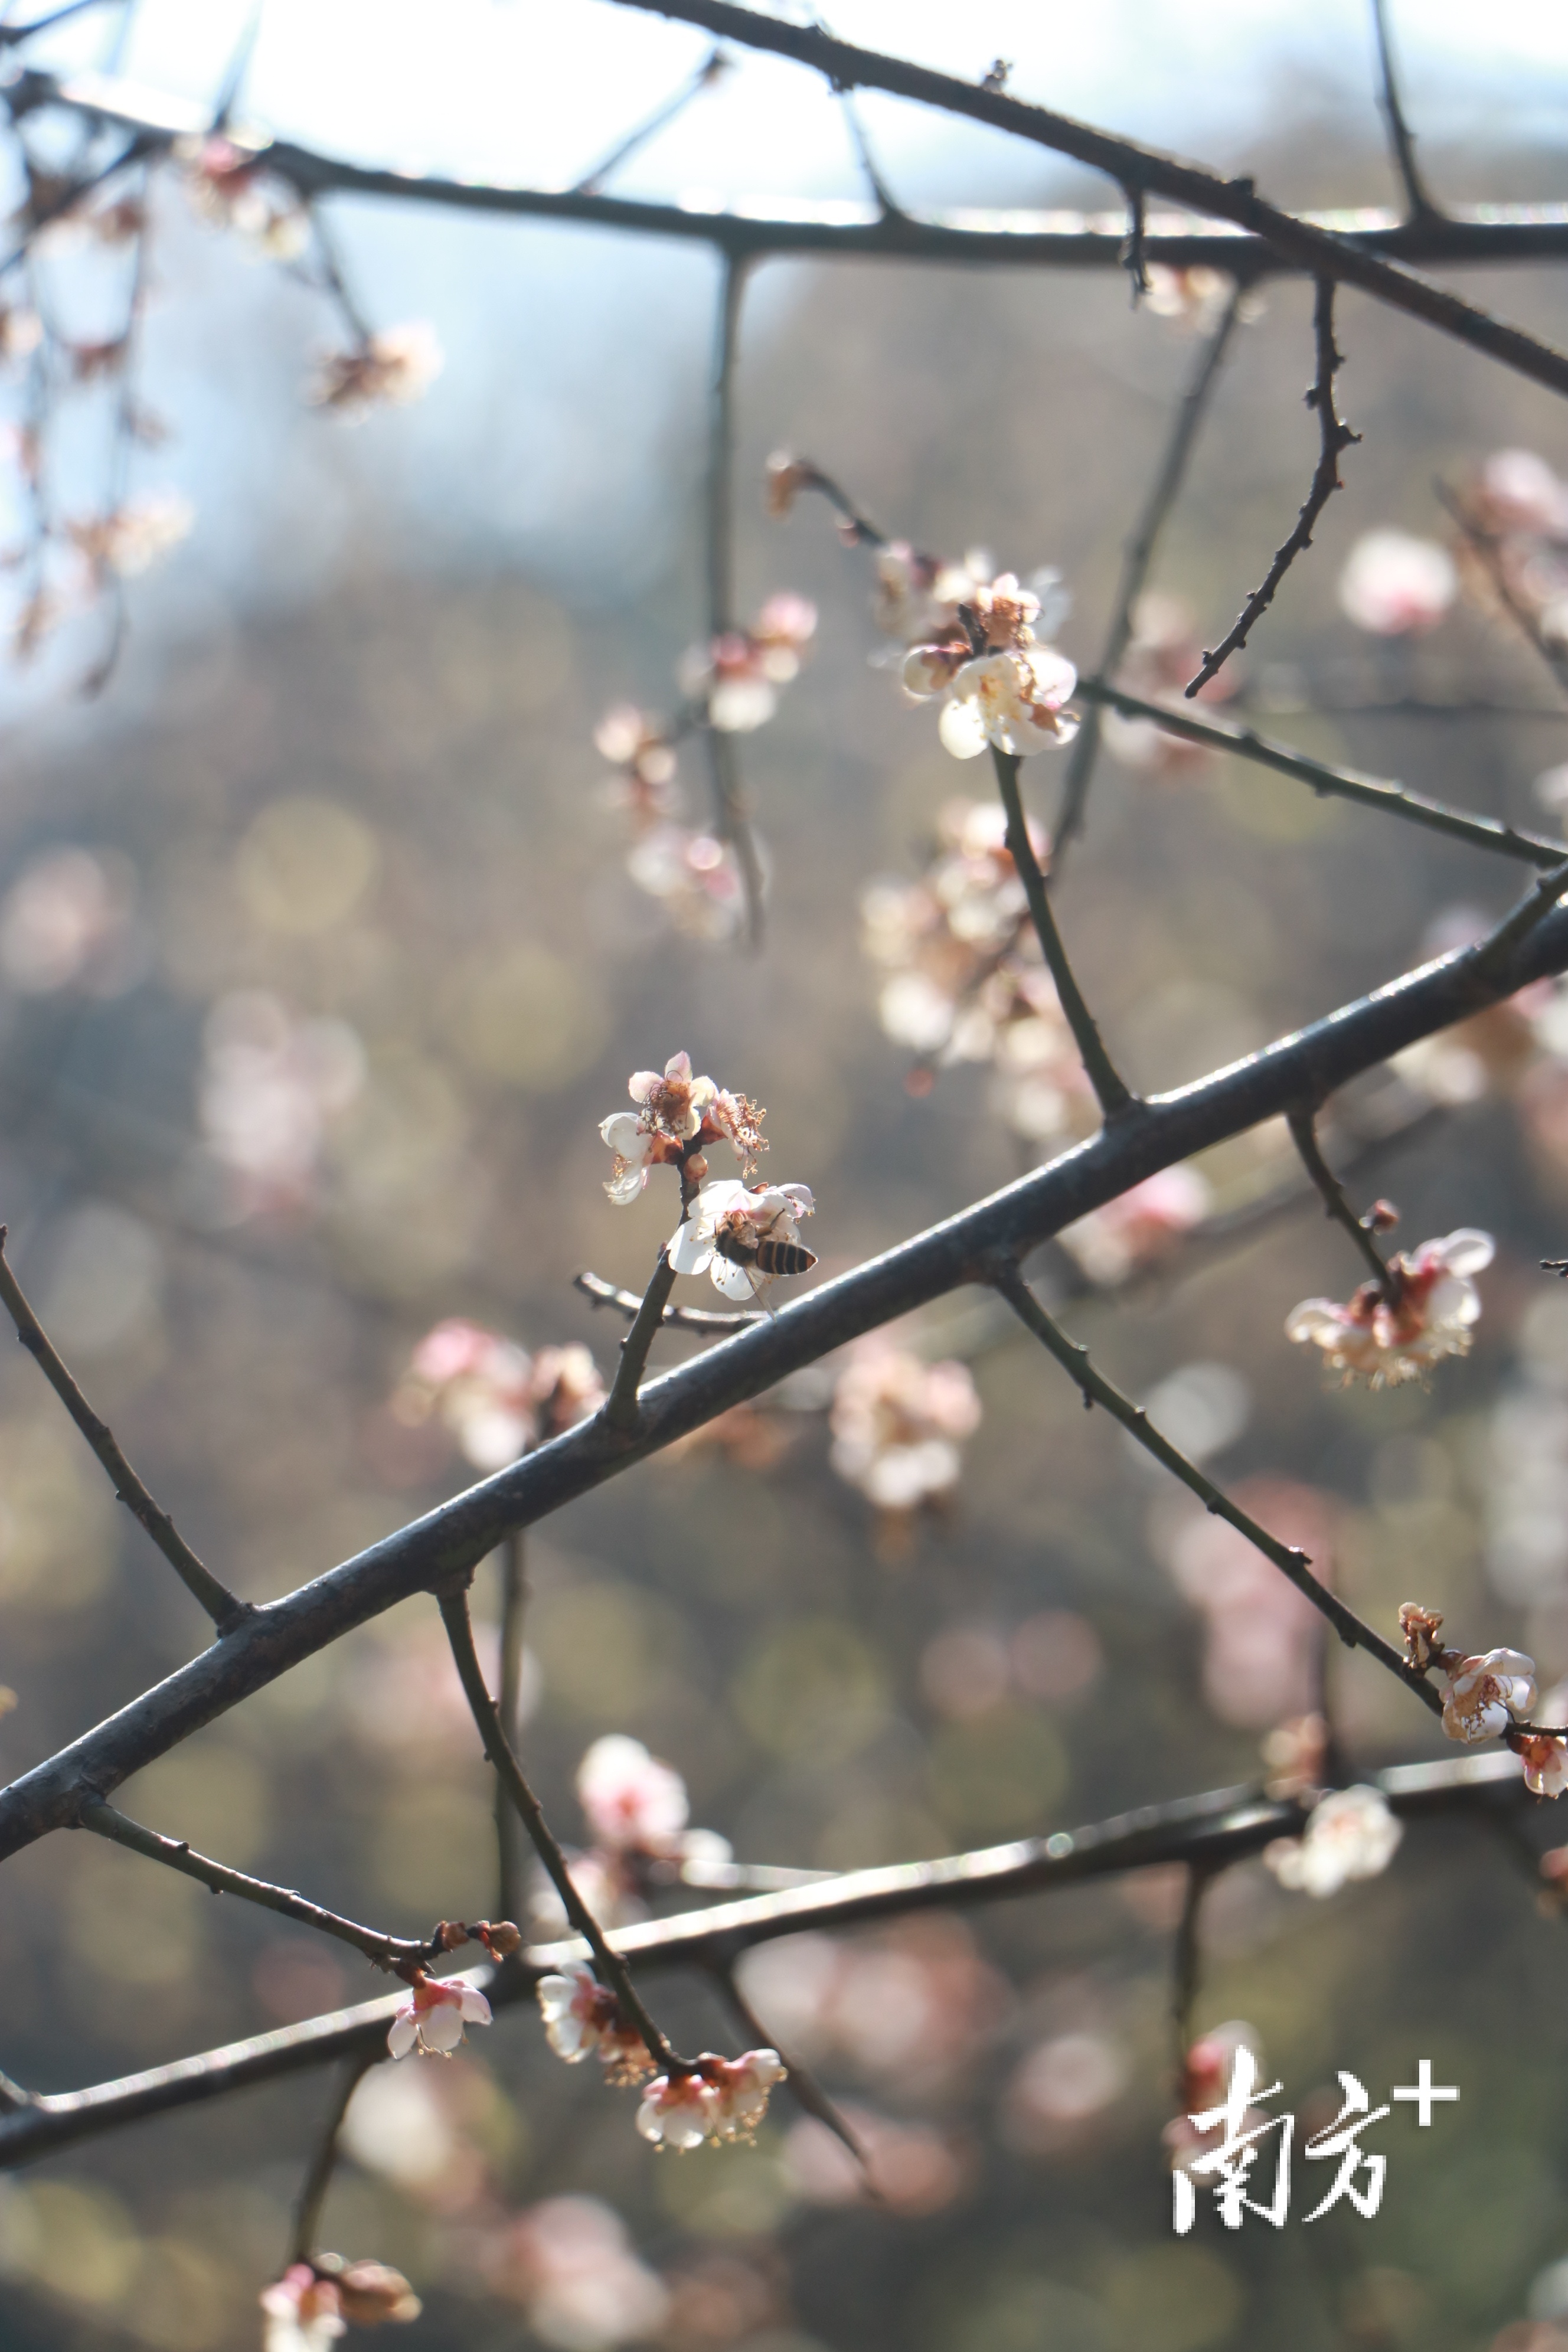 在水濂山水库公园，一朵朵俏丽、莹白的梅花，正在枝头摇曳，不时散发着清香，吸引了蜜蜂前来采蜜。何绮莹摄